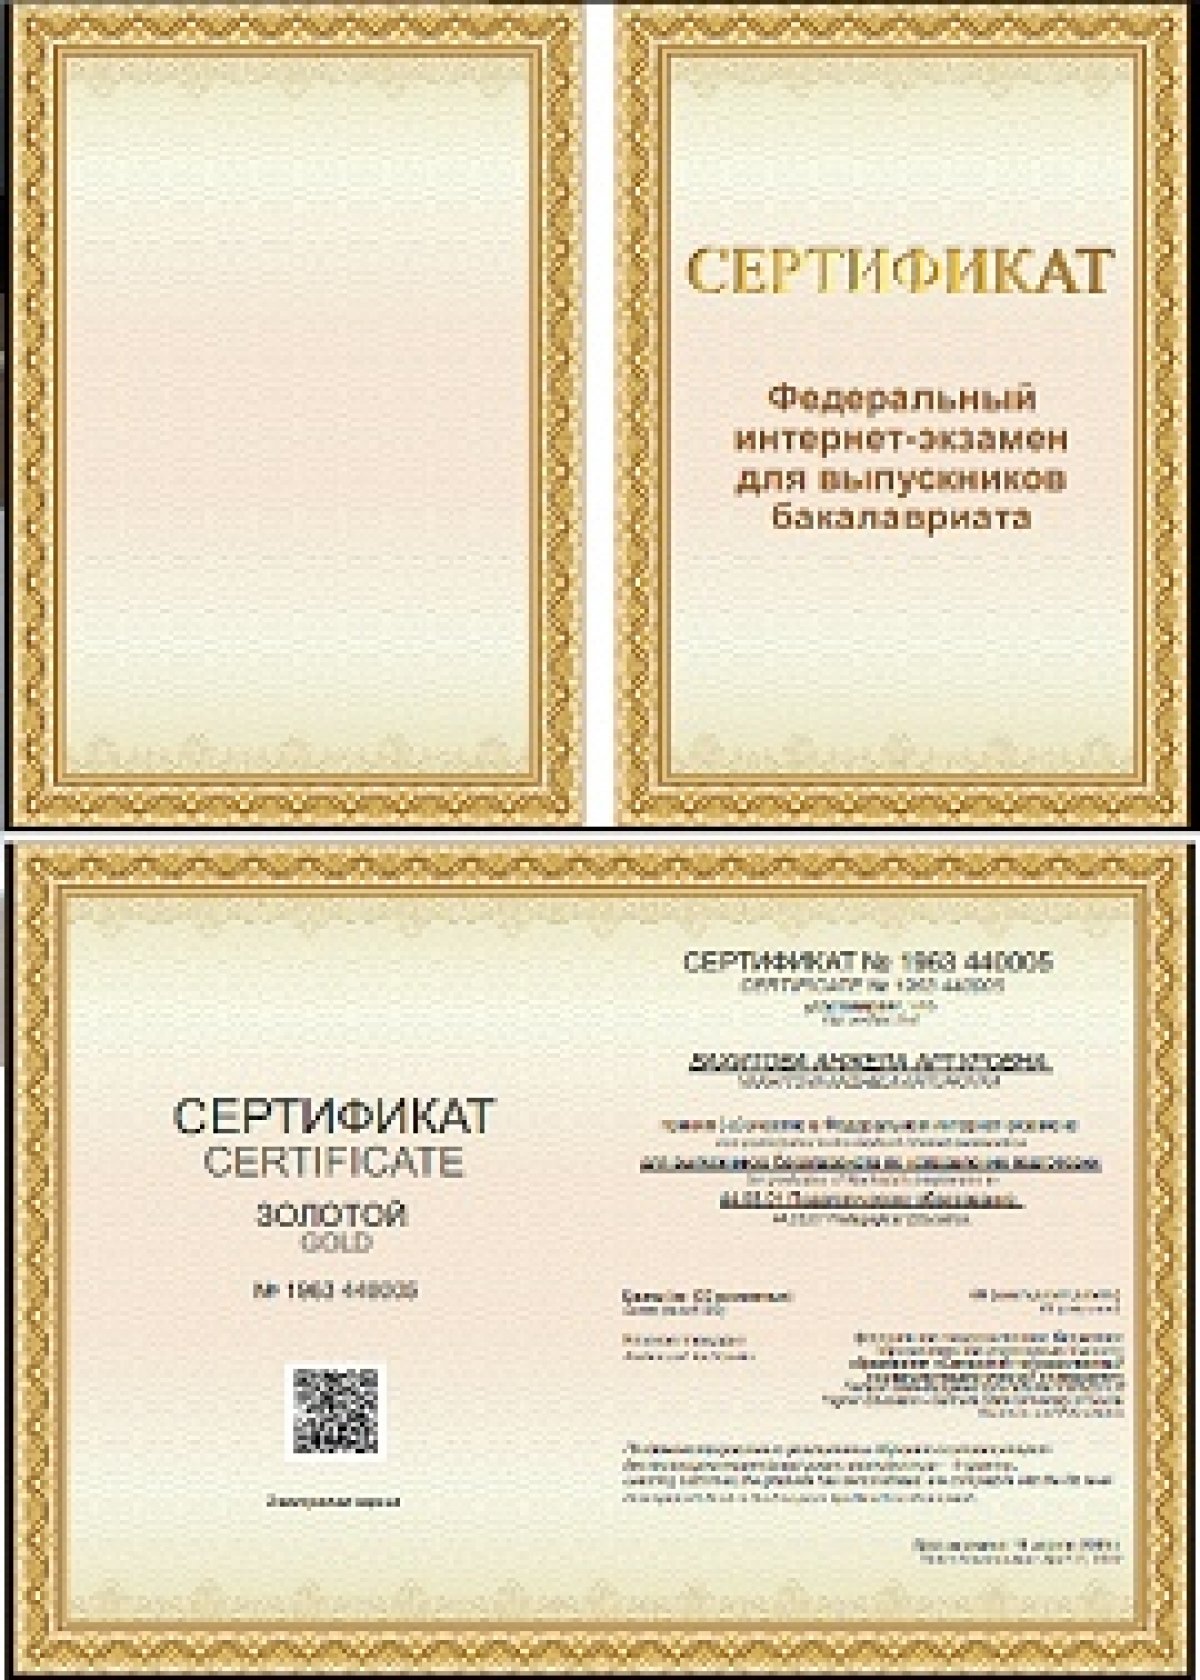 Выпускники факультета математики, физики и информатики получили золотой и бронзовые сертификаты ФИЭБ!